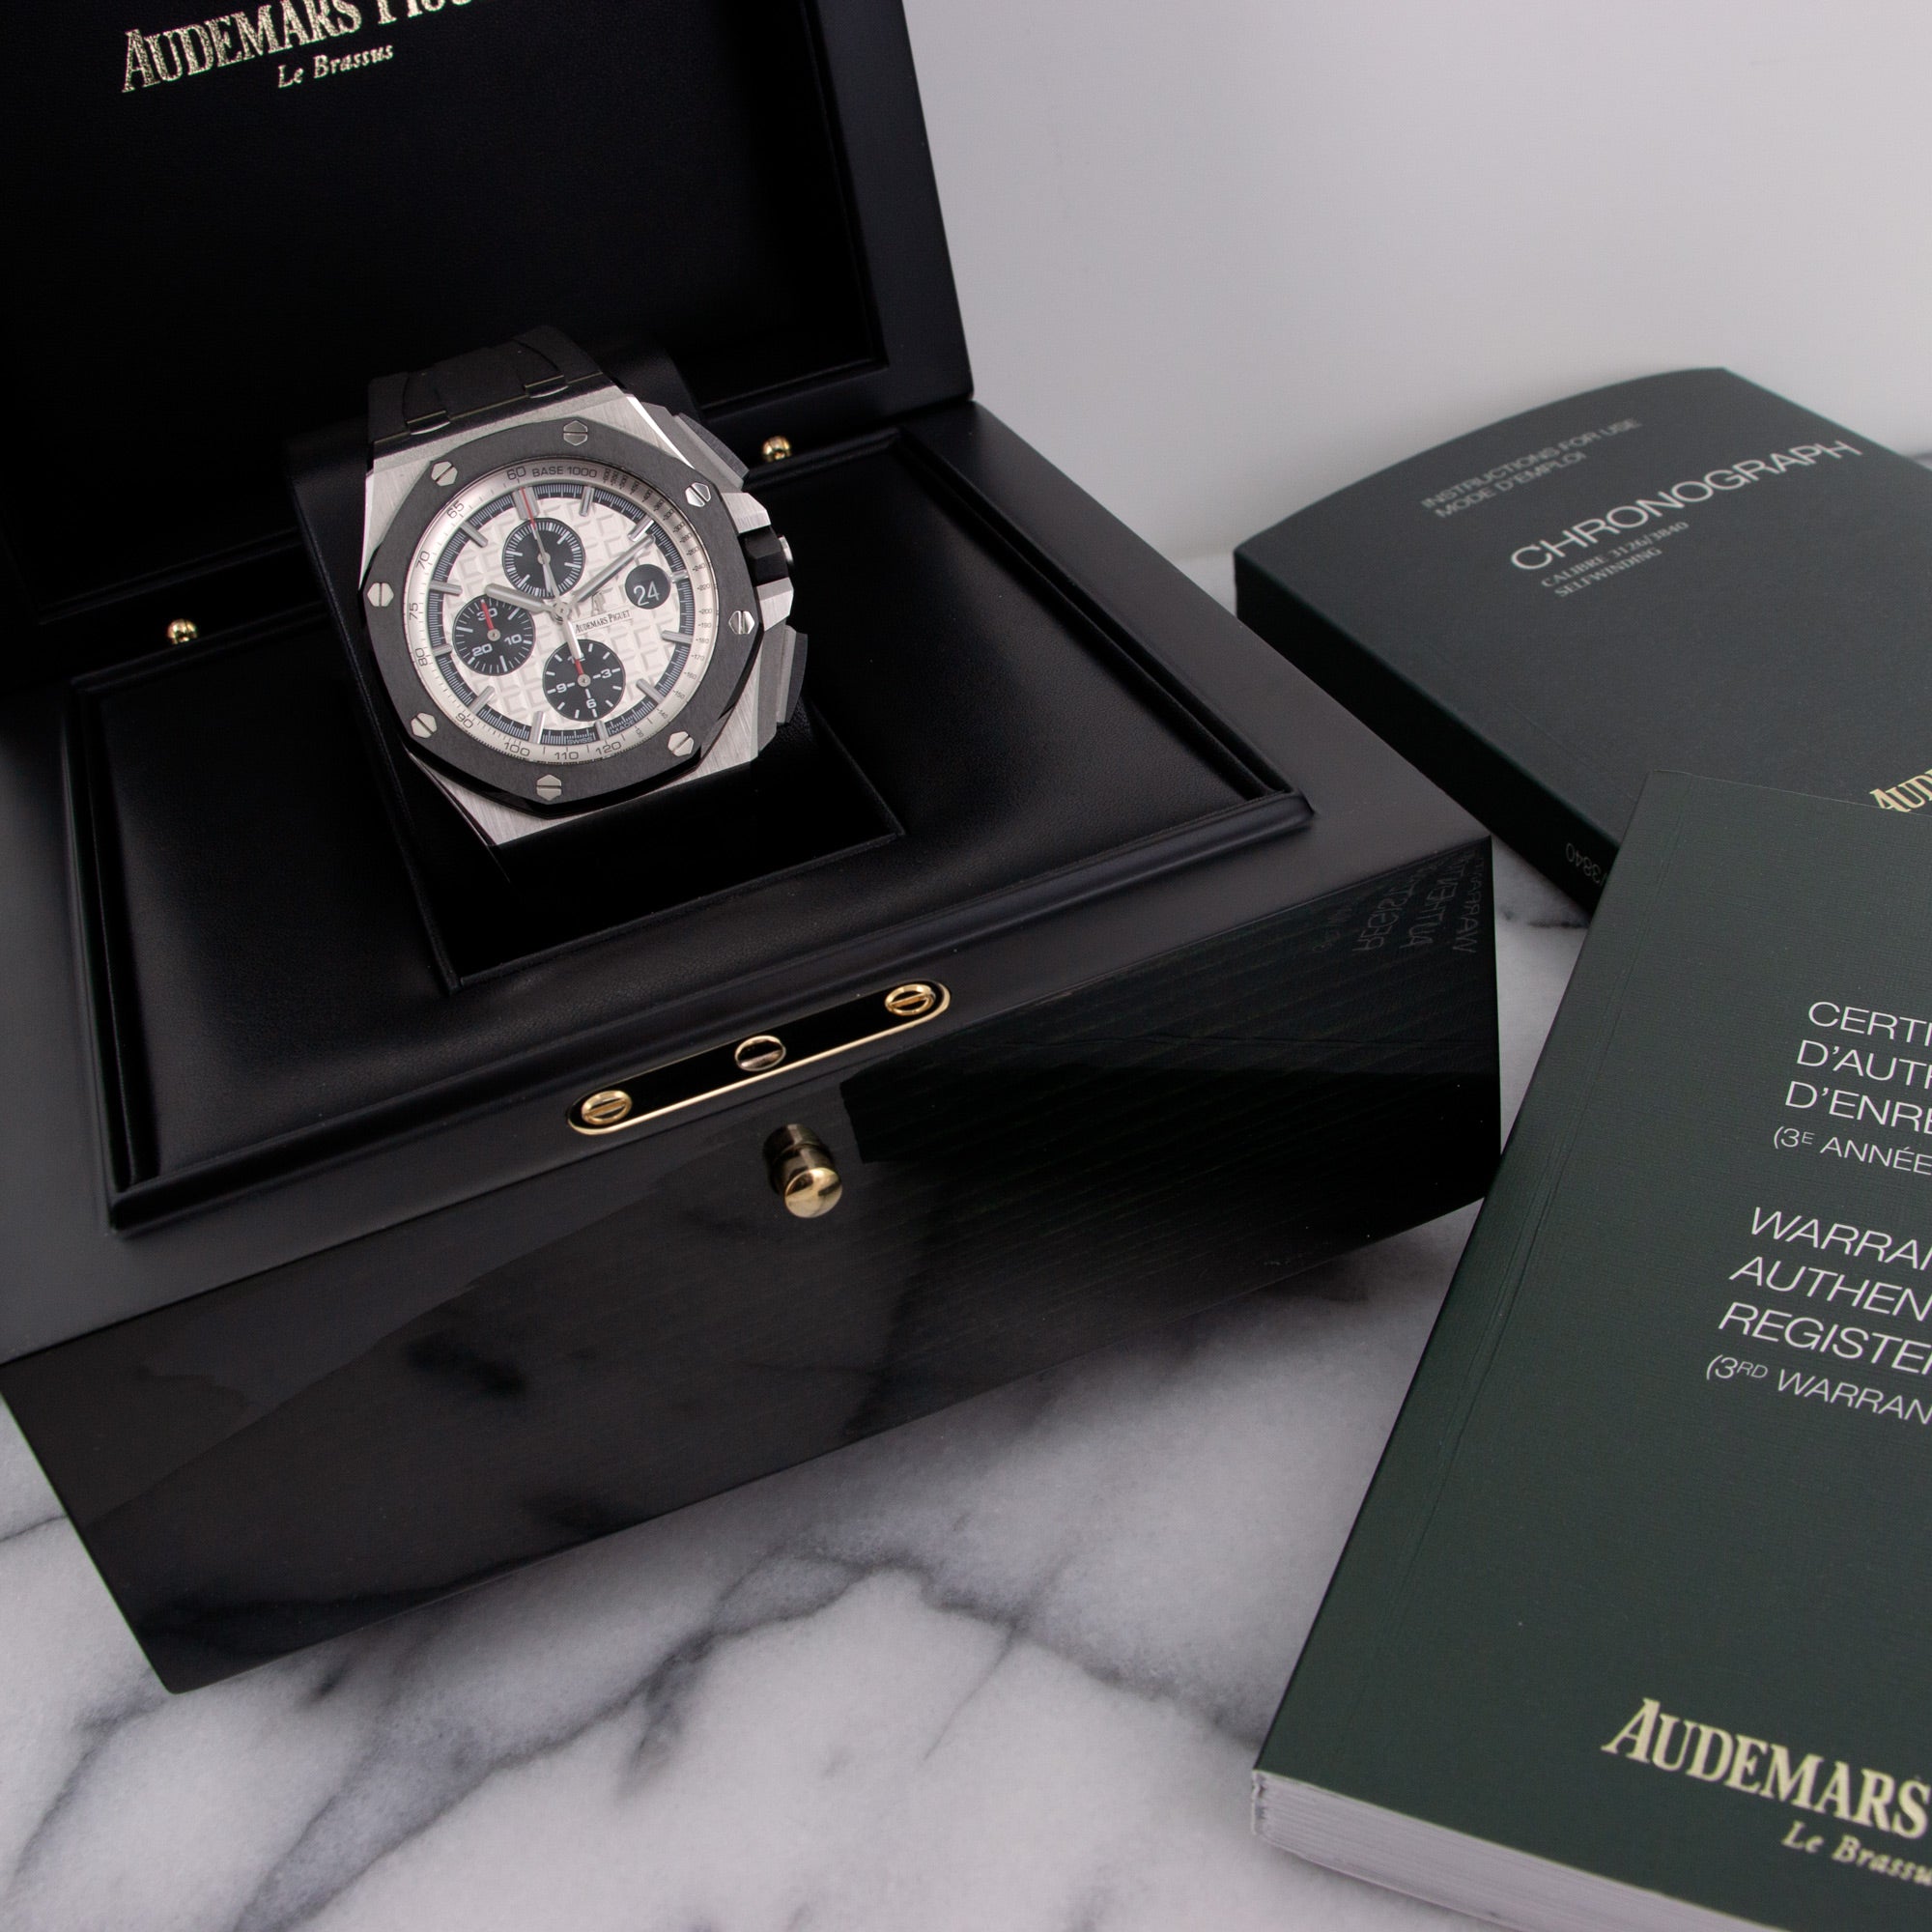 Audemars Piguet - Audemars Piguet Royal Oak Offshore Silver Dial Watch - The Keystone Watches